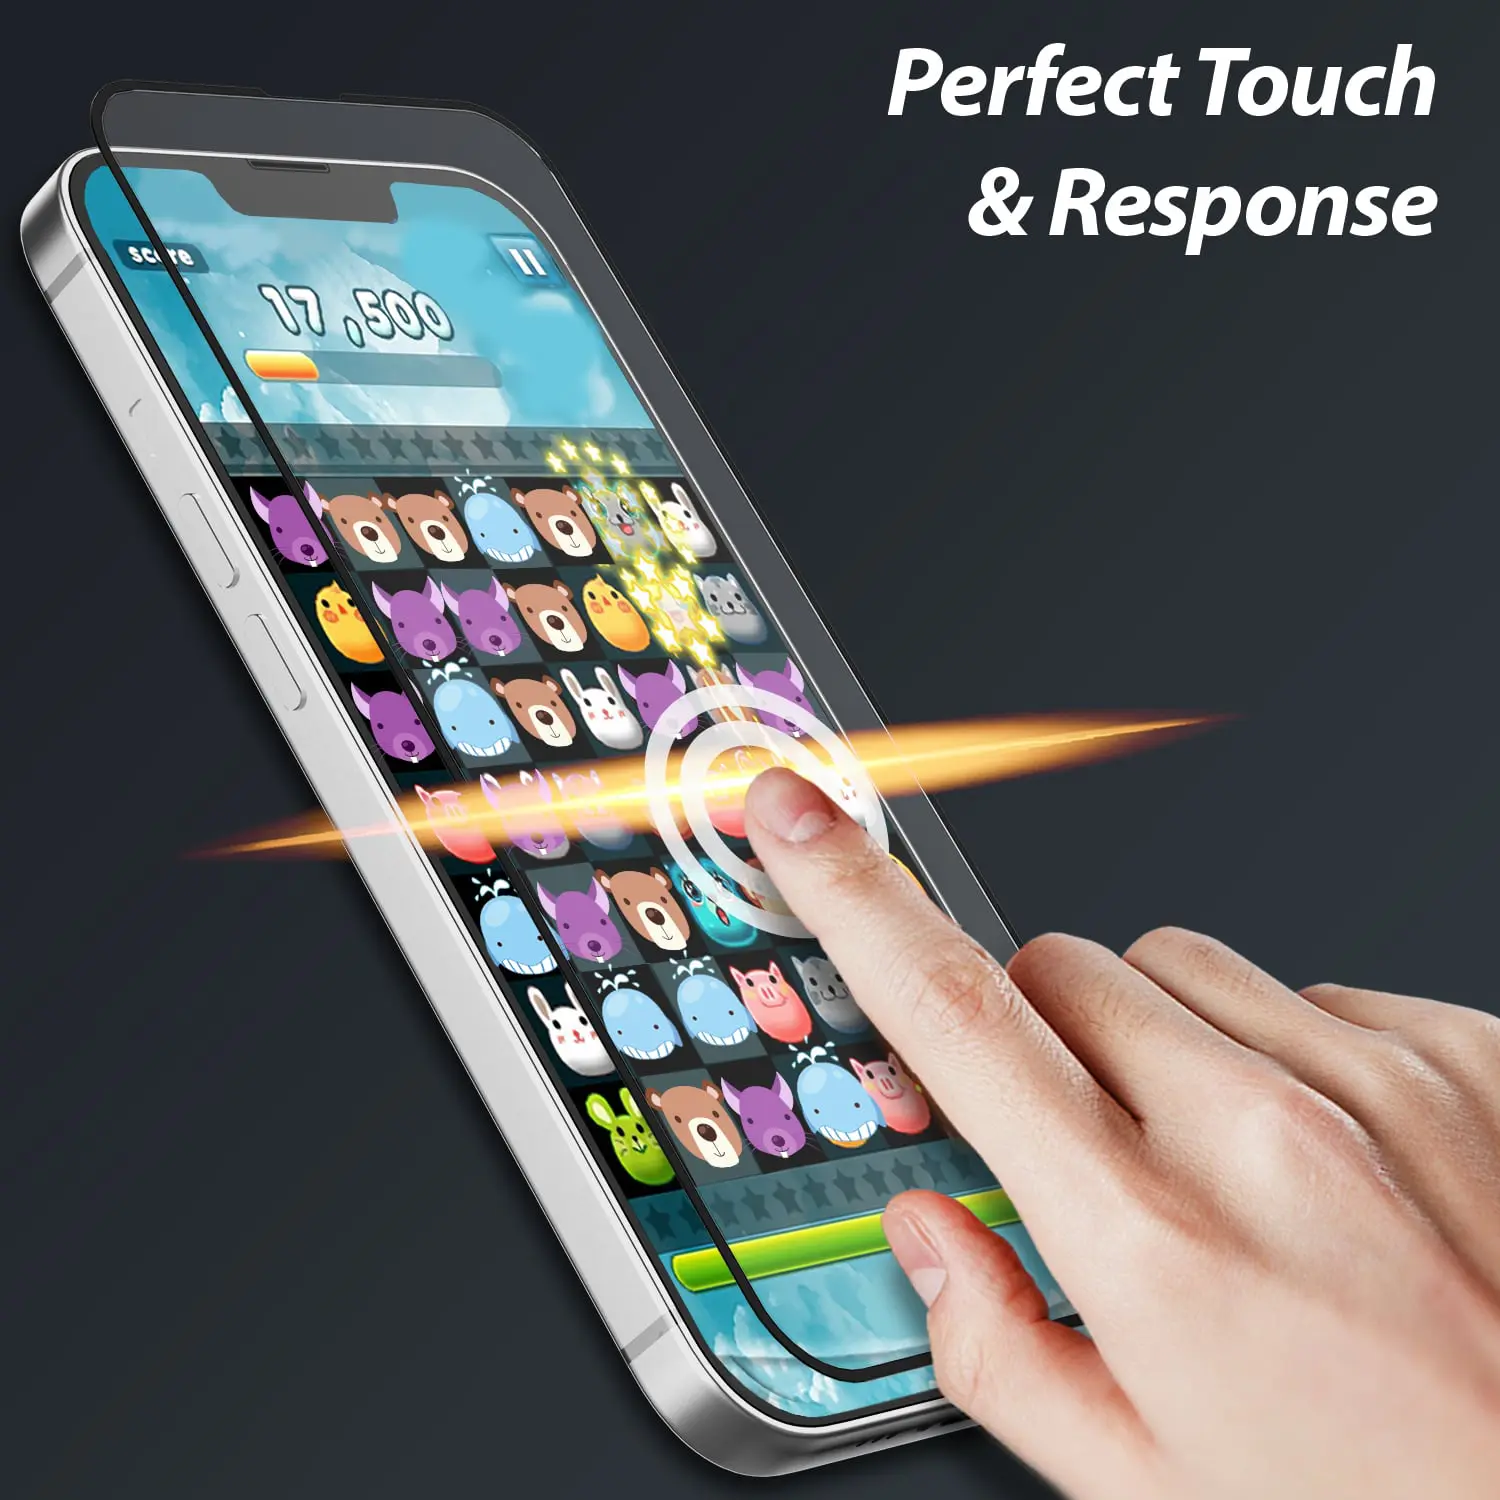 ฟิล์มกระจกนิรภัย Whitestone EZ Tempered Glass Screen Protector - iPhone 13 / 13 Pro (ฟิล์ม 2 แผ่น)